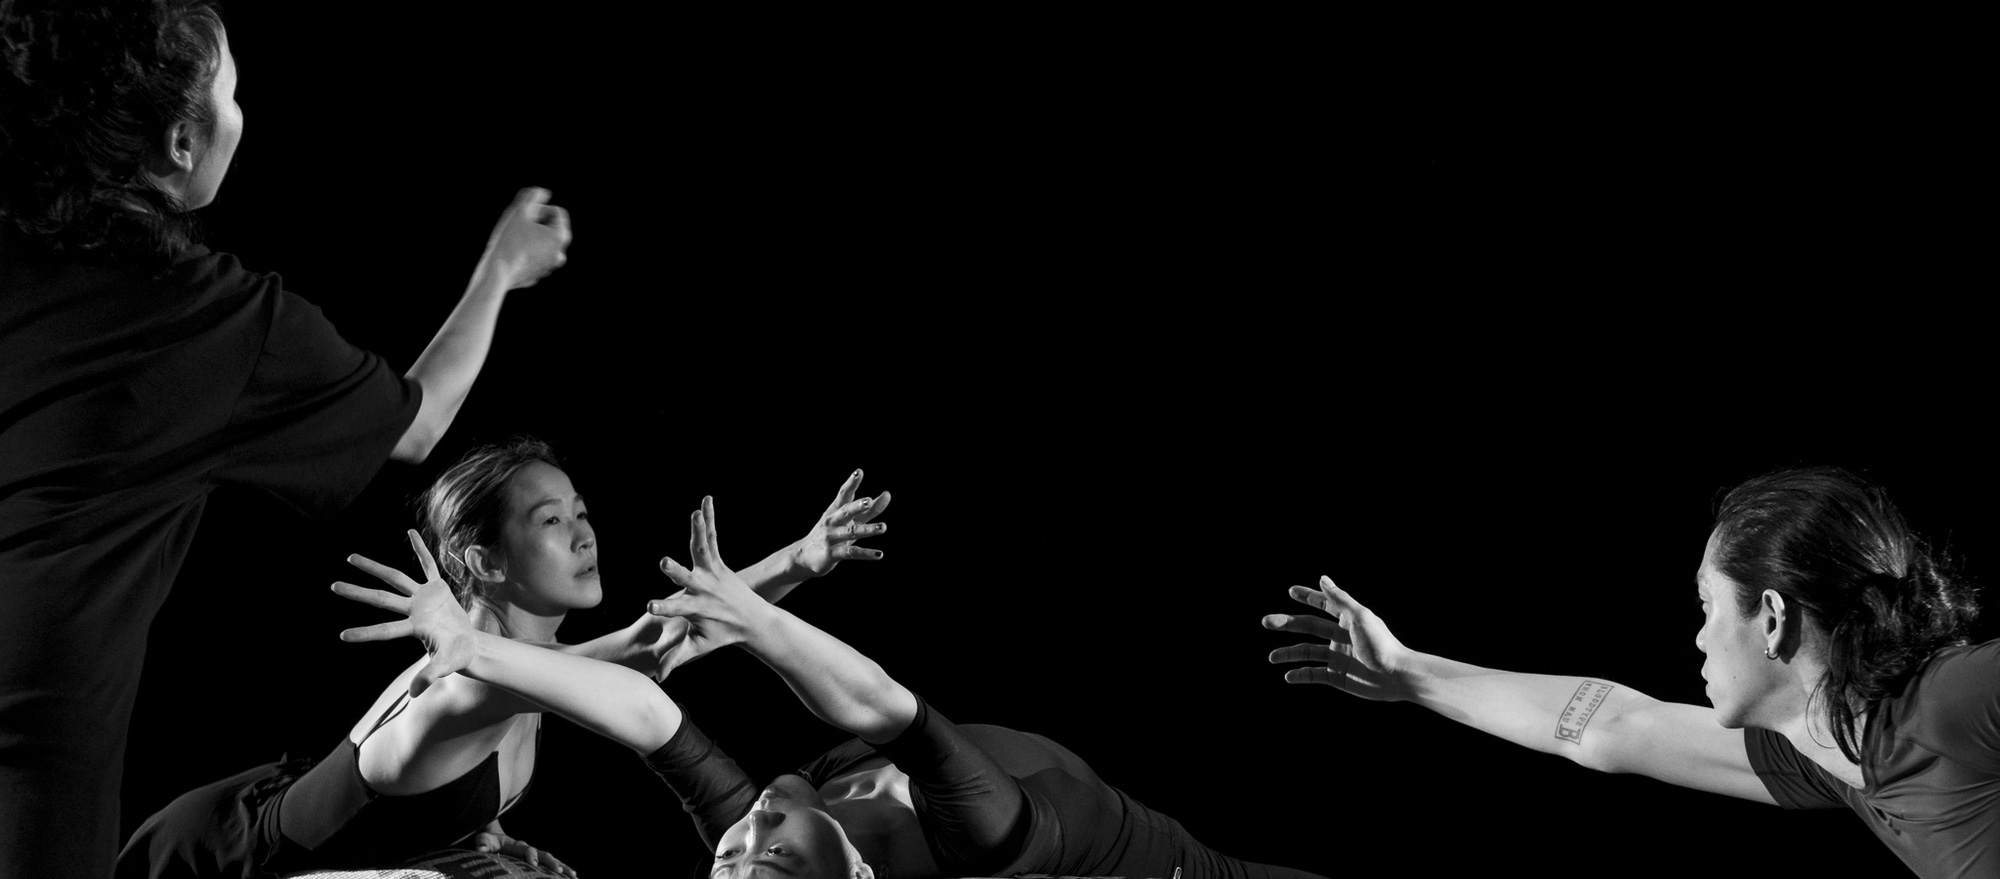 Vở ballet Kiều khai thác chiều sâu tâm hồn văn hóa Á Đông - Ảnh 6.